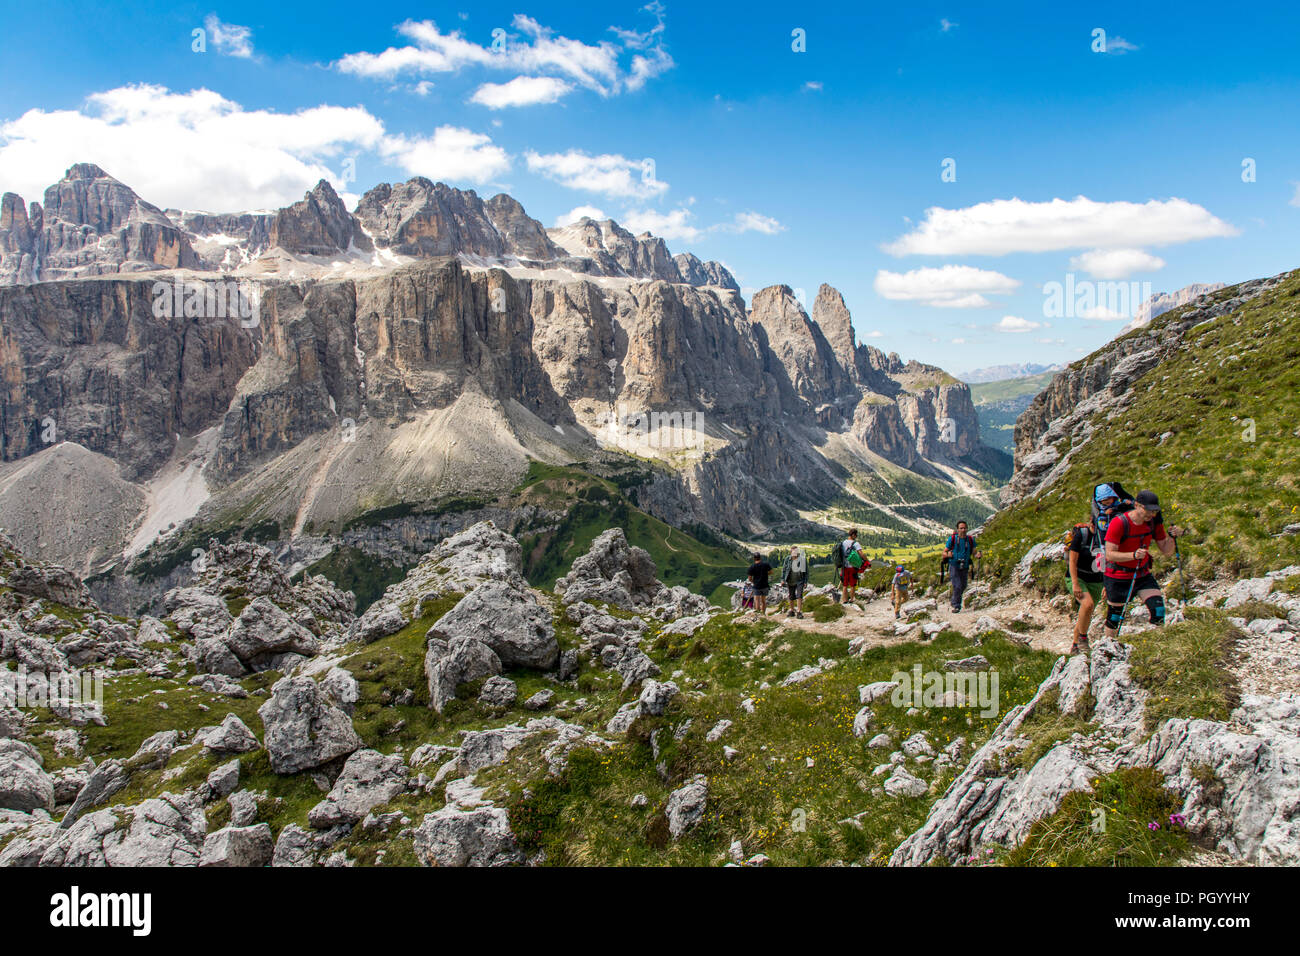 Excursionista de montaña en el Parque Natural Puez-Geisler, dolomitas, Tirol del Sur, Trentino, Italia Foto de stock